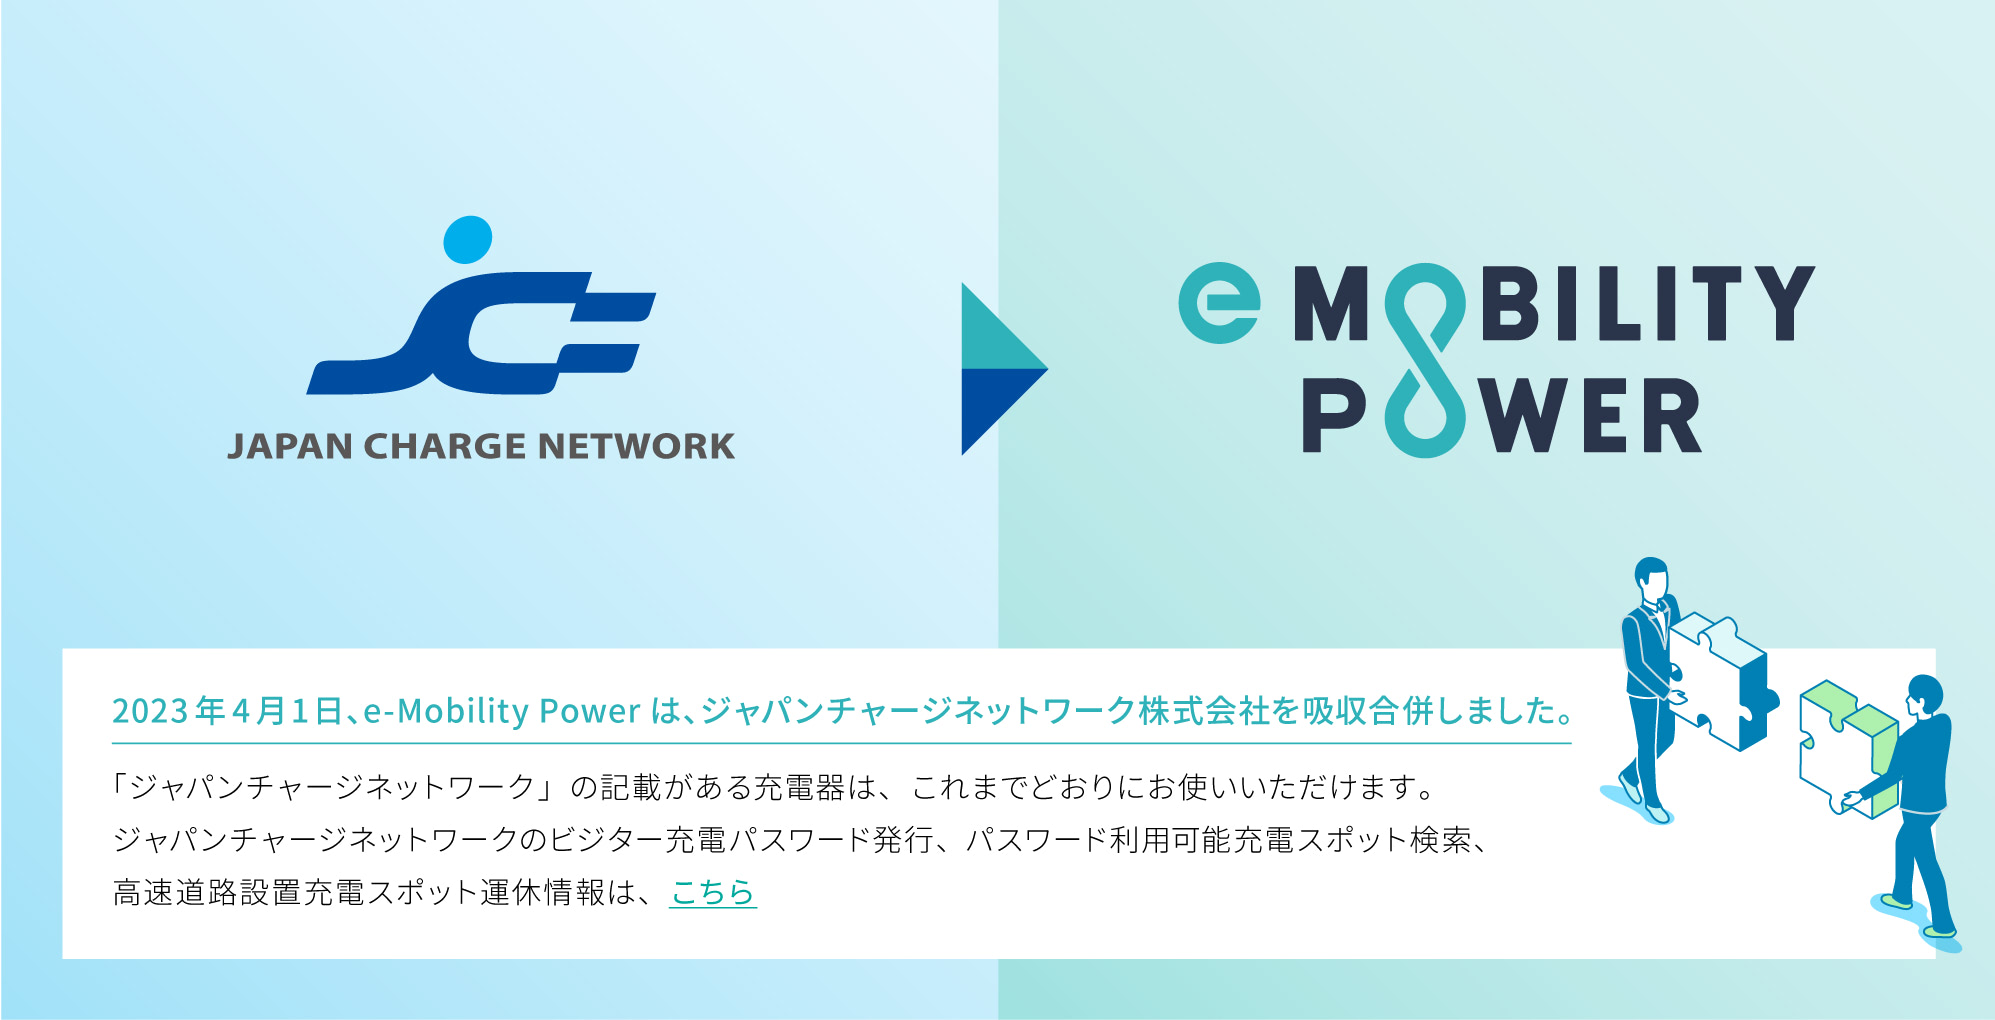 2023年4月1日、e-Mobility Powerは、ジャパンチャージネットワーク株主会社を吸収合併します